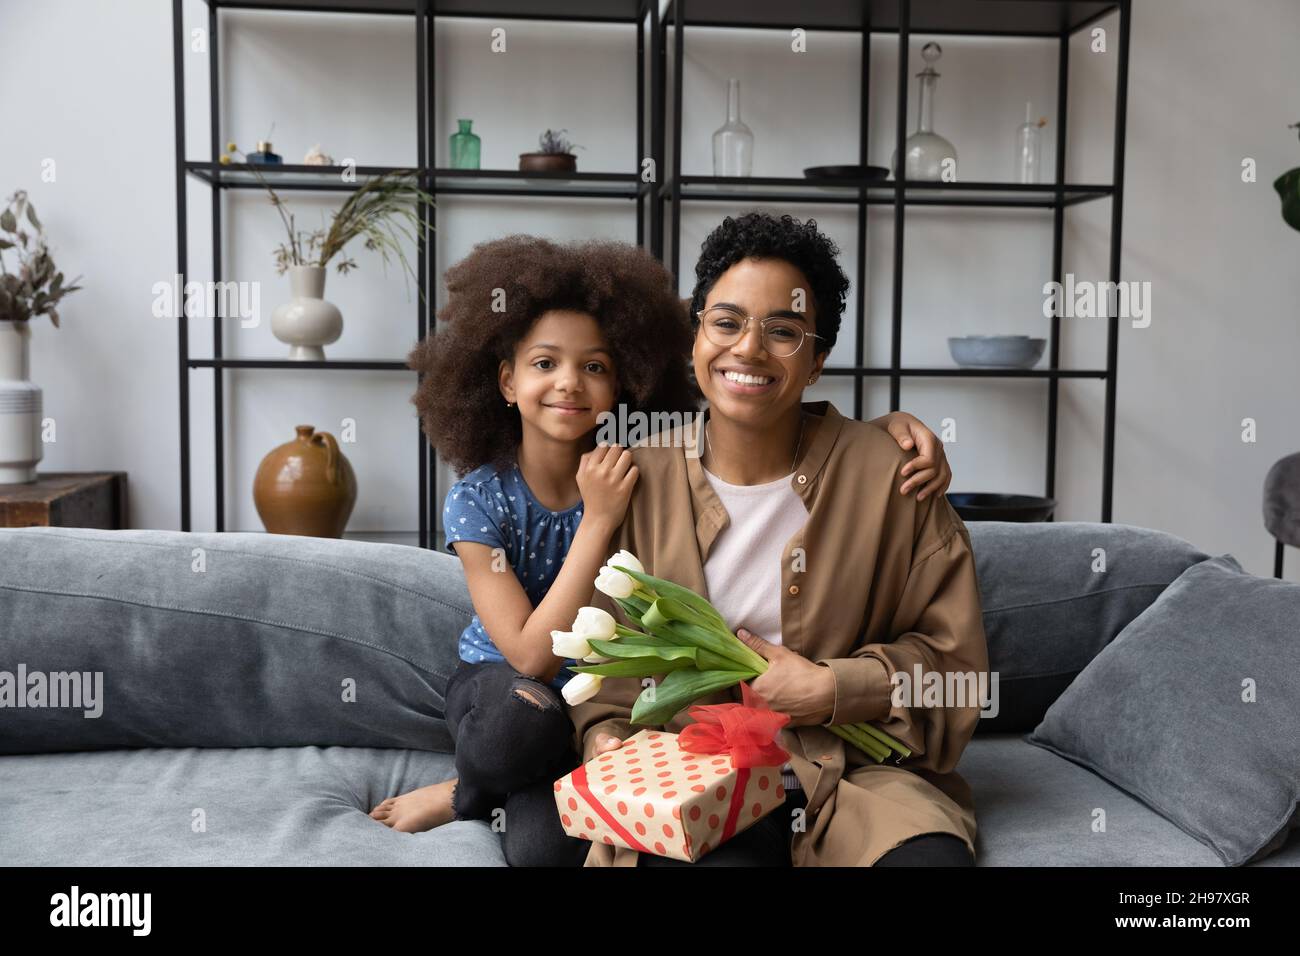 Ritratto di happy bonding famiglia afroamericana con regalo avvolto. Foto Stock